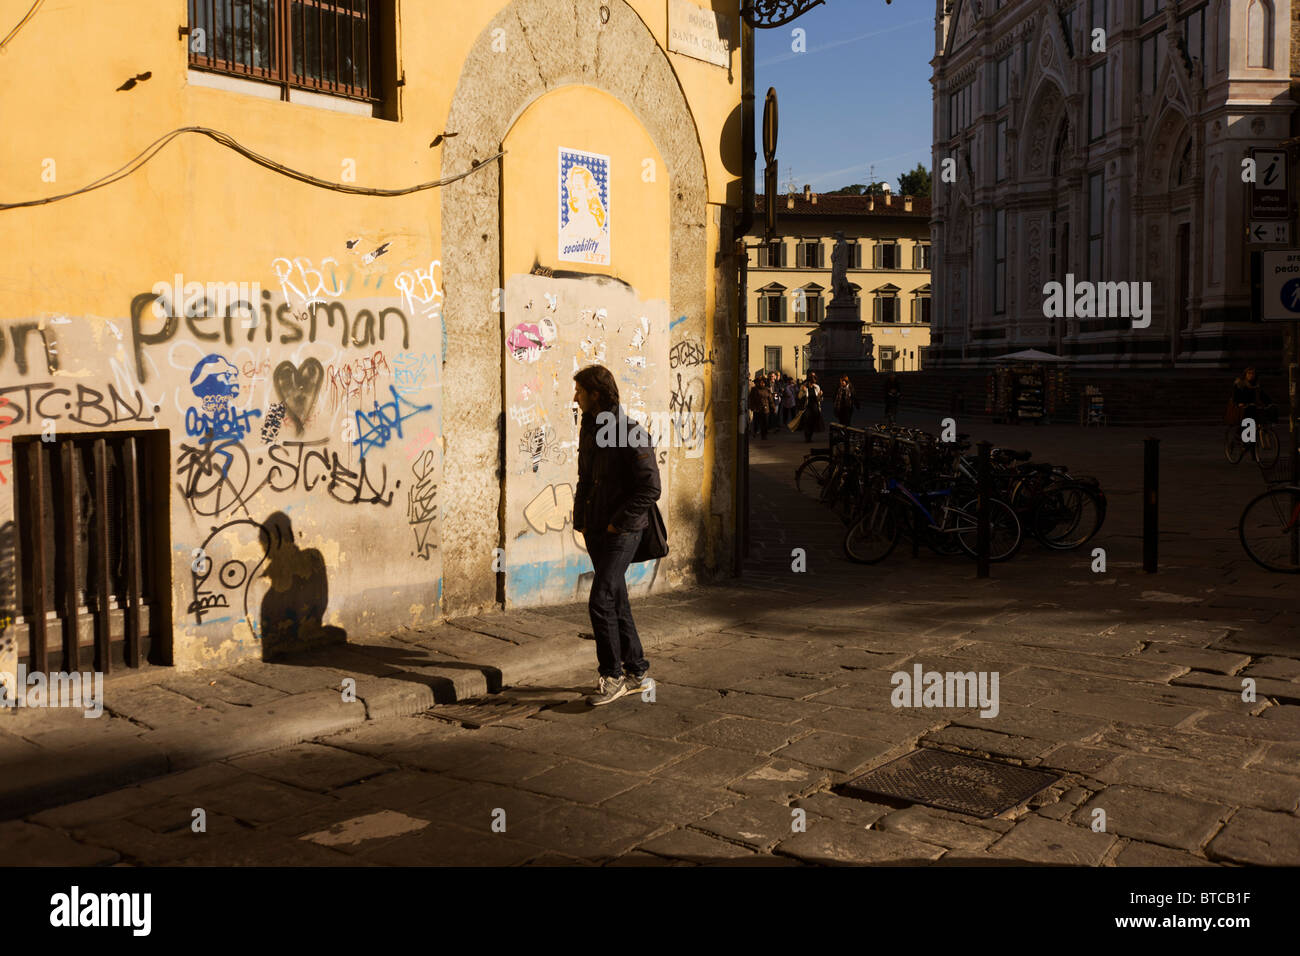 Lokalen vorbei an Graffiti Straßenecke und touristischen Kiosk in der Nähe von Piazza Santa Croce in Florenz. Stockfoto